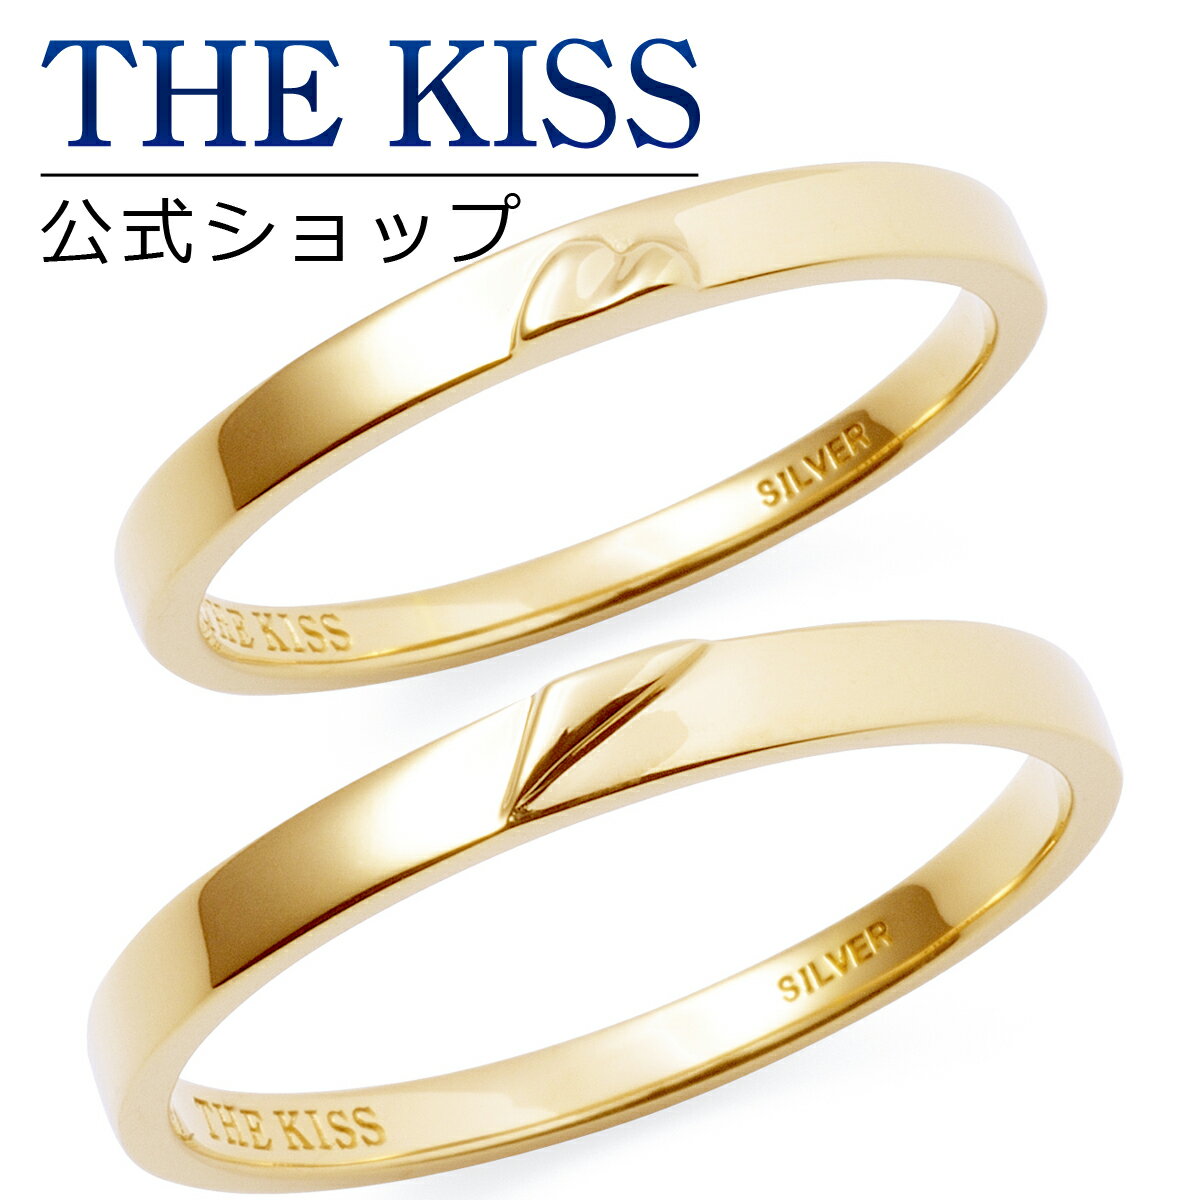 【ラッピング無料】THE KISS 公式ショップ シルバー ペアリング ゴールド カラー ペアアクセサリー カップル 人気 ジュエリーブランド THEKISS ペア 指輪 プレゼント SR2428-2429 セット シンプル 男性 女性 2個セット 母の日【あす楽対応（土日祝除く）】